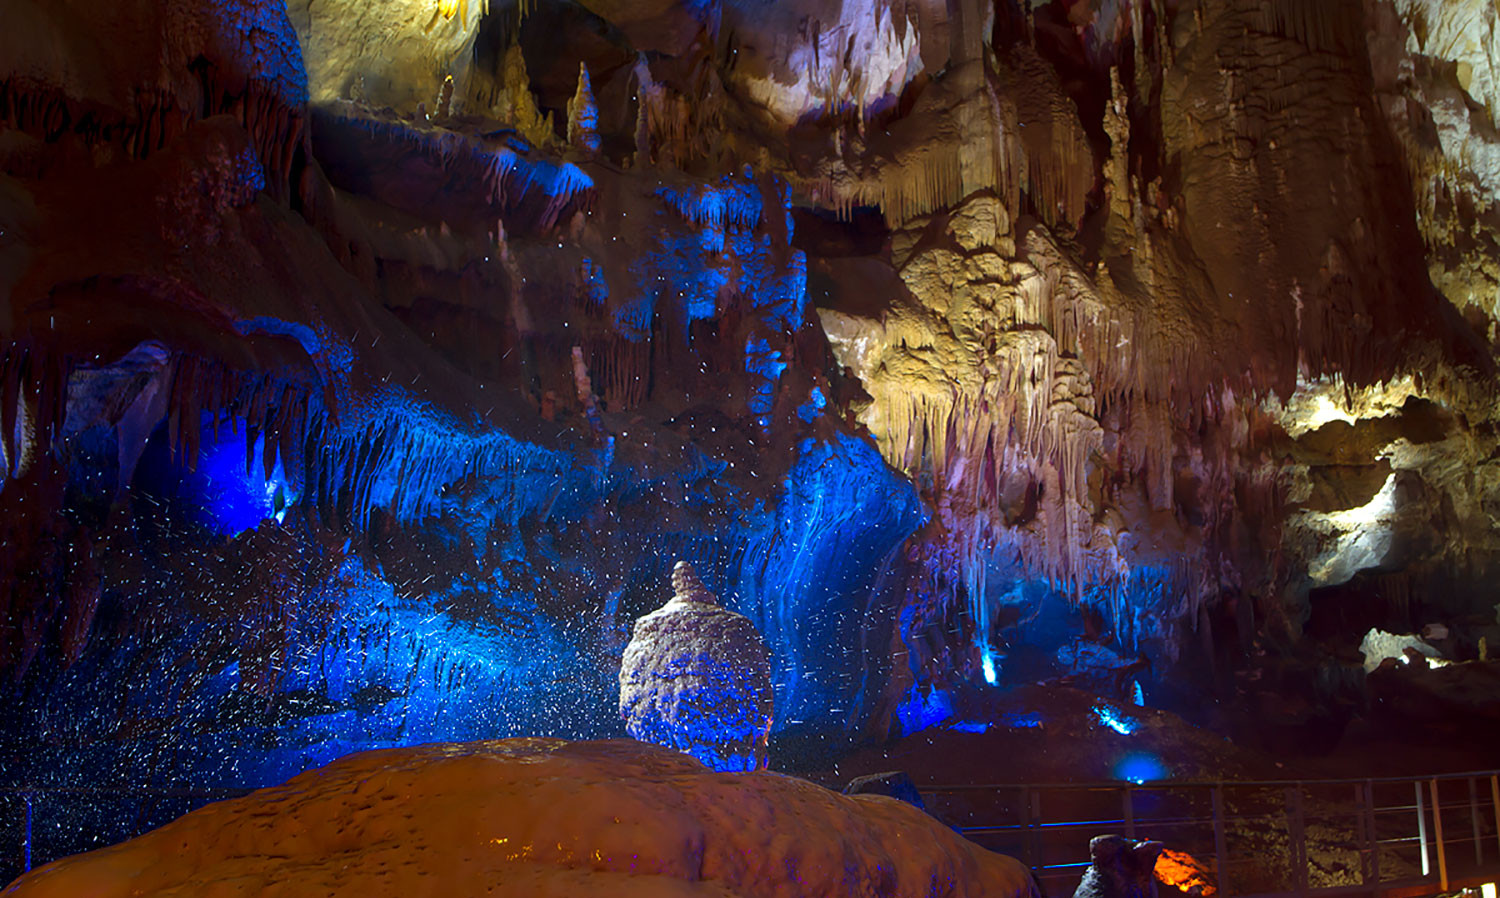 Prometheus Cave, Imereti region